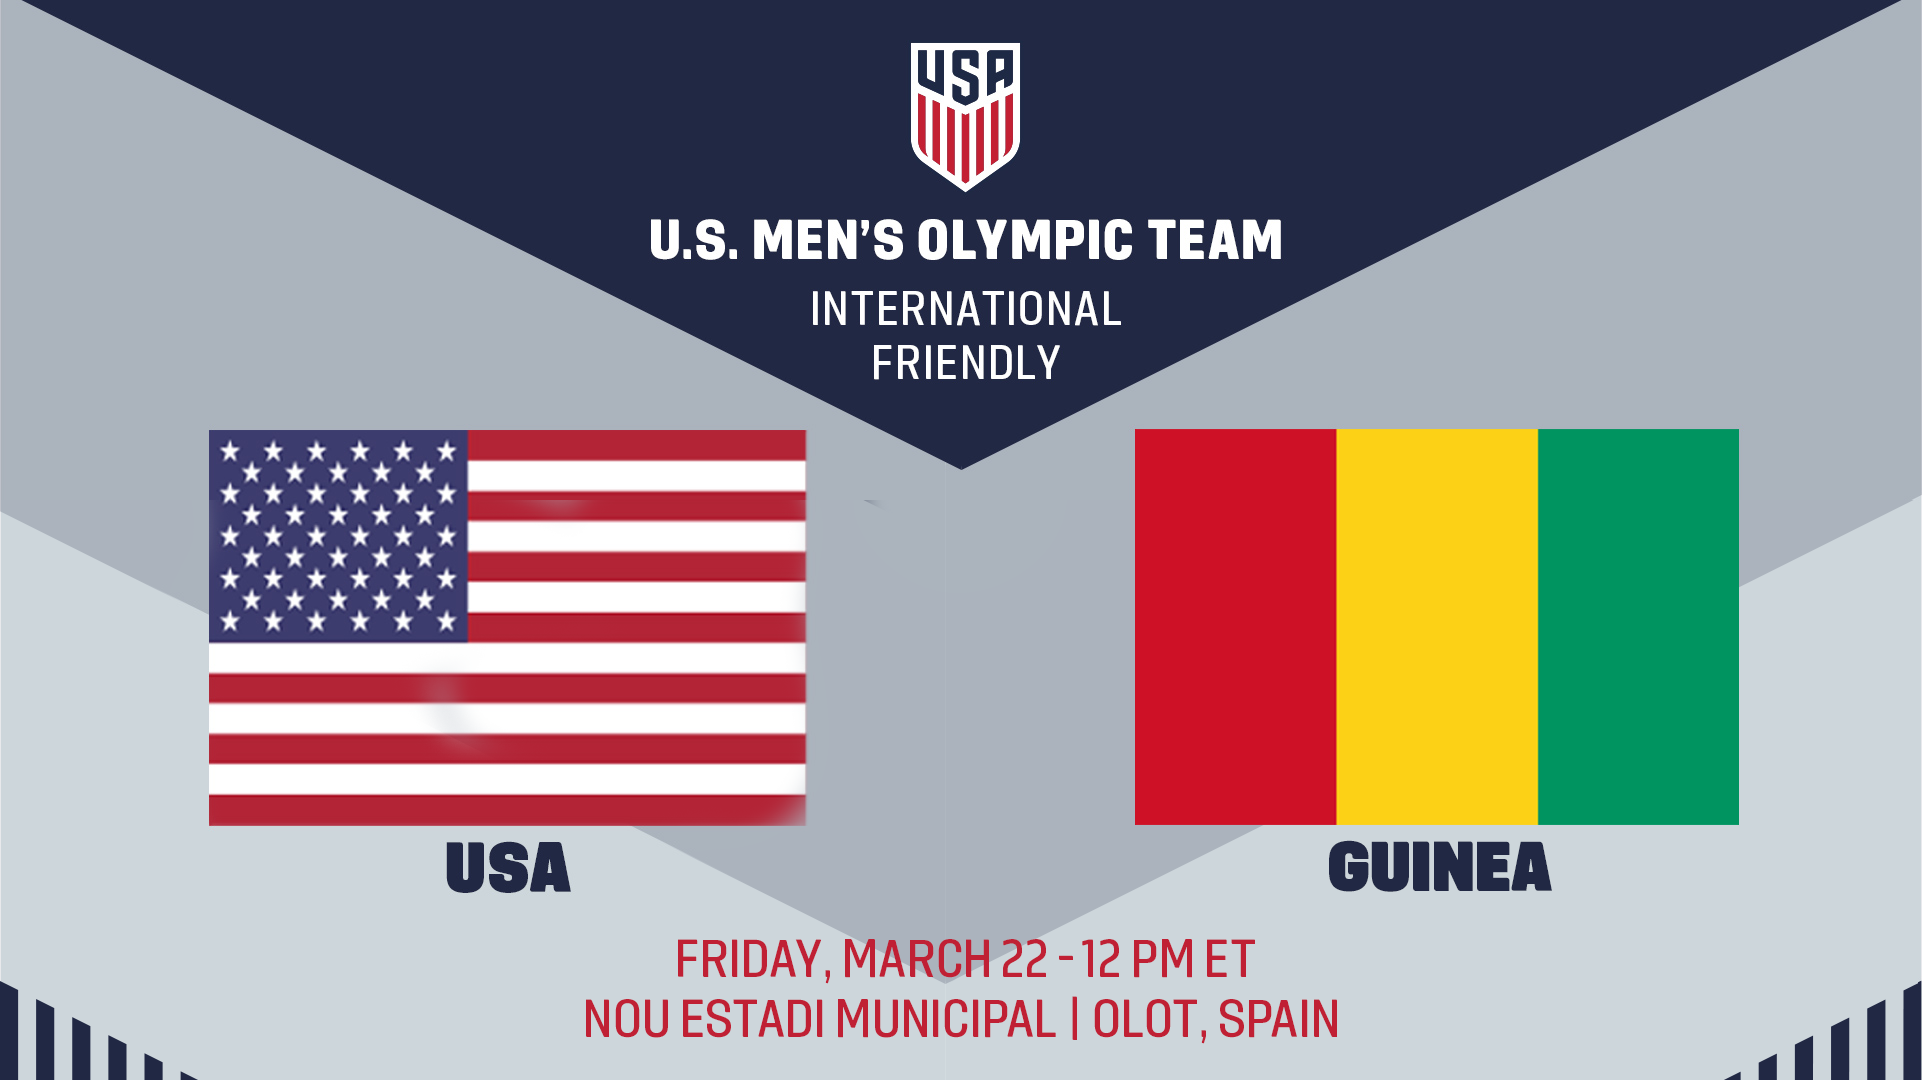 La selección olímpica masculina de Estados Unidos se enfrentará a Guinea el 22 de marzo en el noreste de España